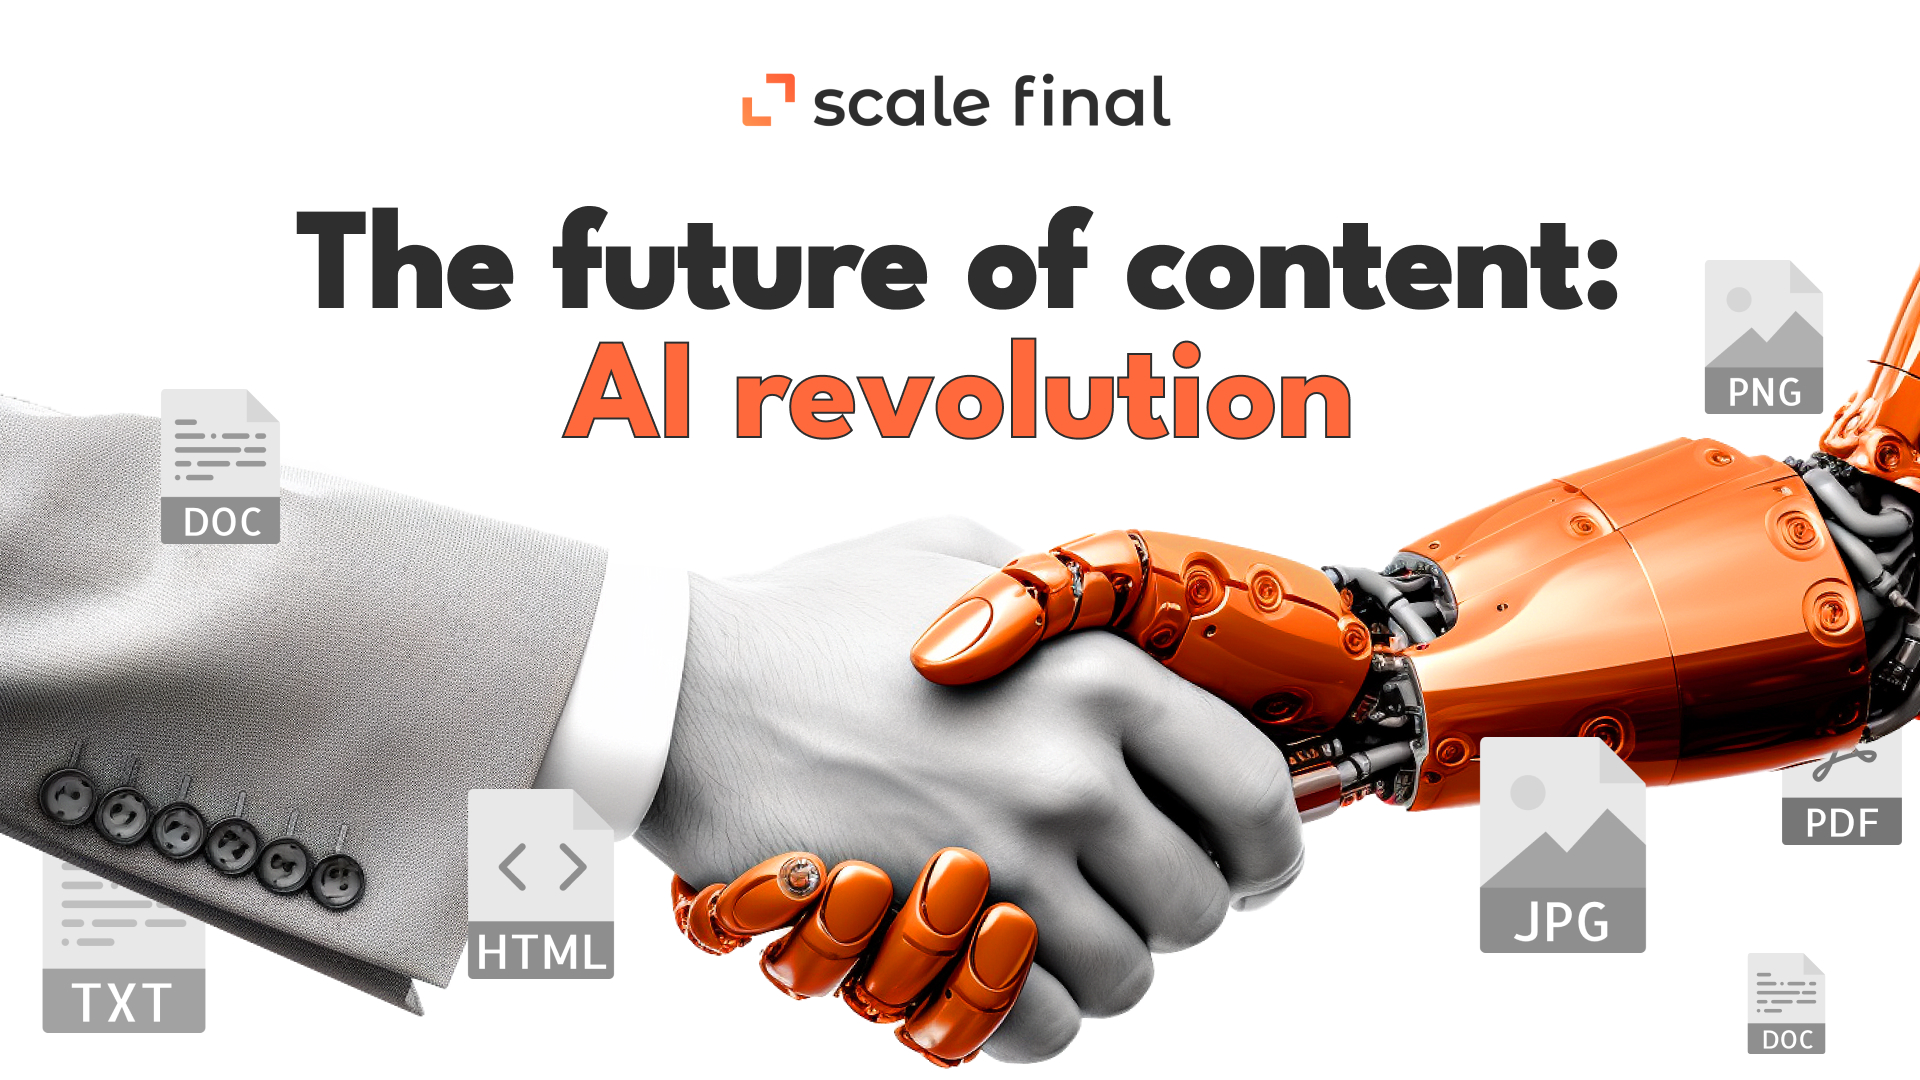 The future of content: AI revolution